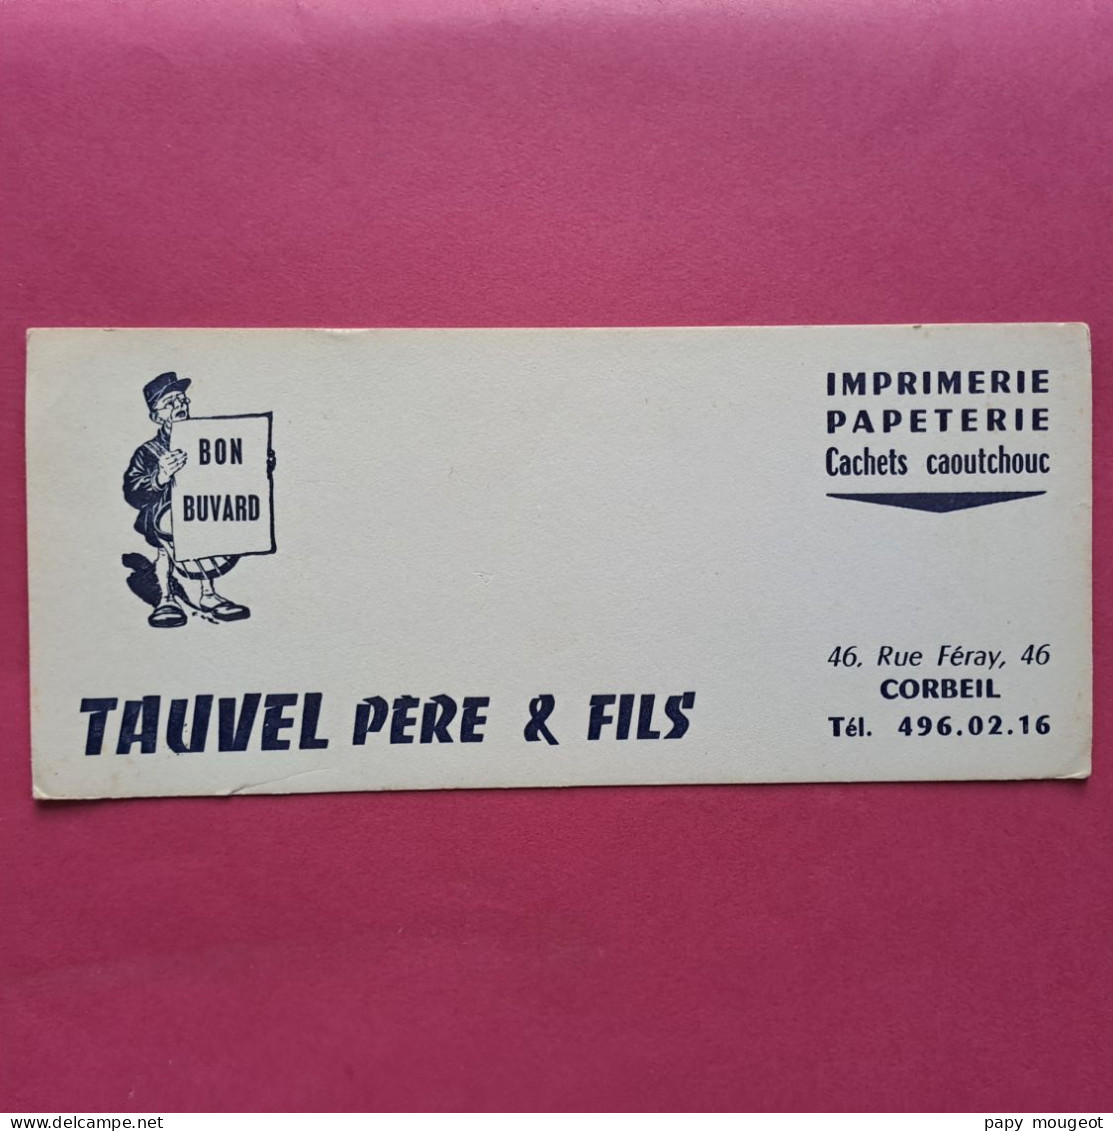 Tauvel Père & Fils Imprimerie Papeterie Cachets Caoutchouc 46, Rue Féray Corbeil - Papierwaren